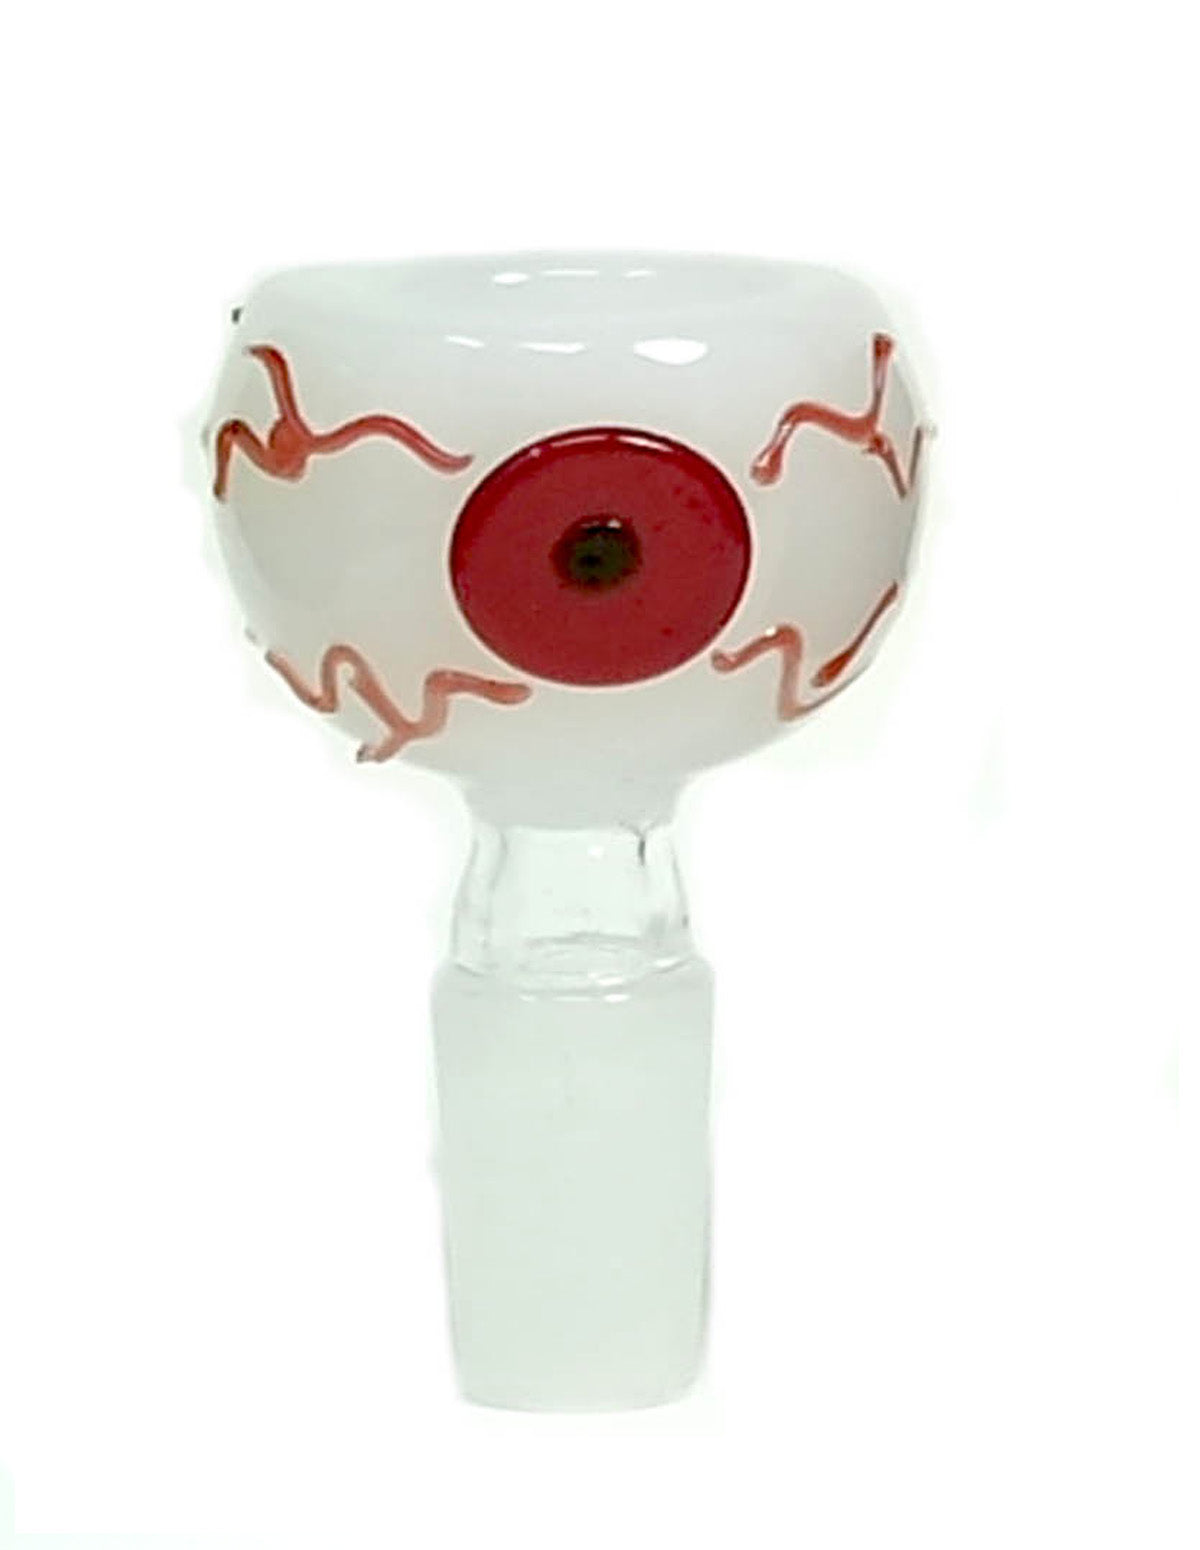 Scary Eye Glass Bowl